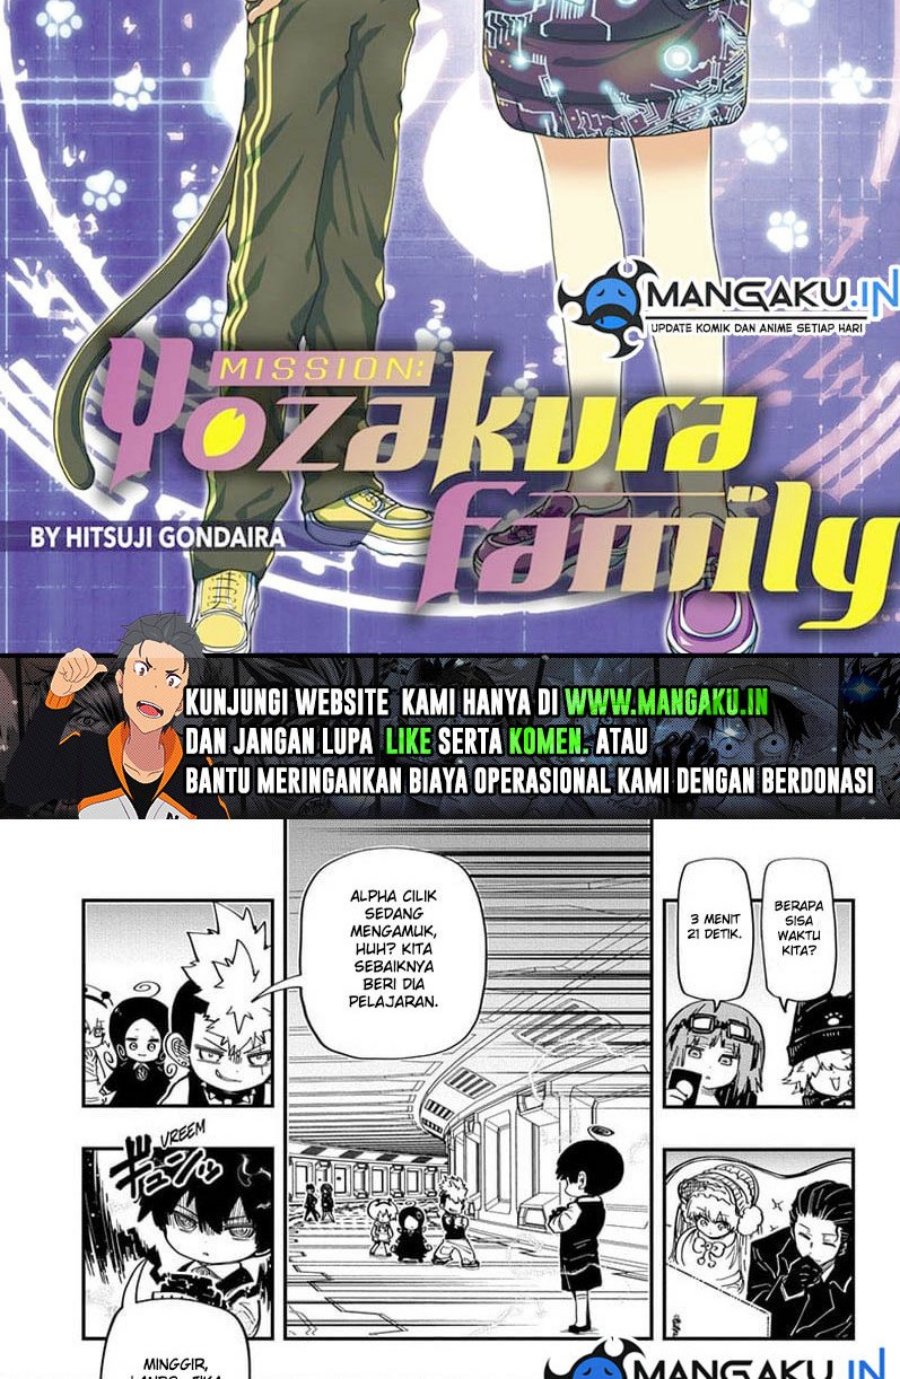 Mission: Yozakura Family Chapter 184